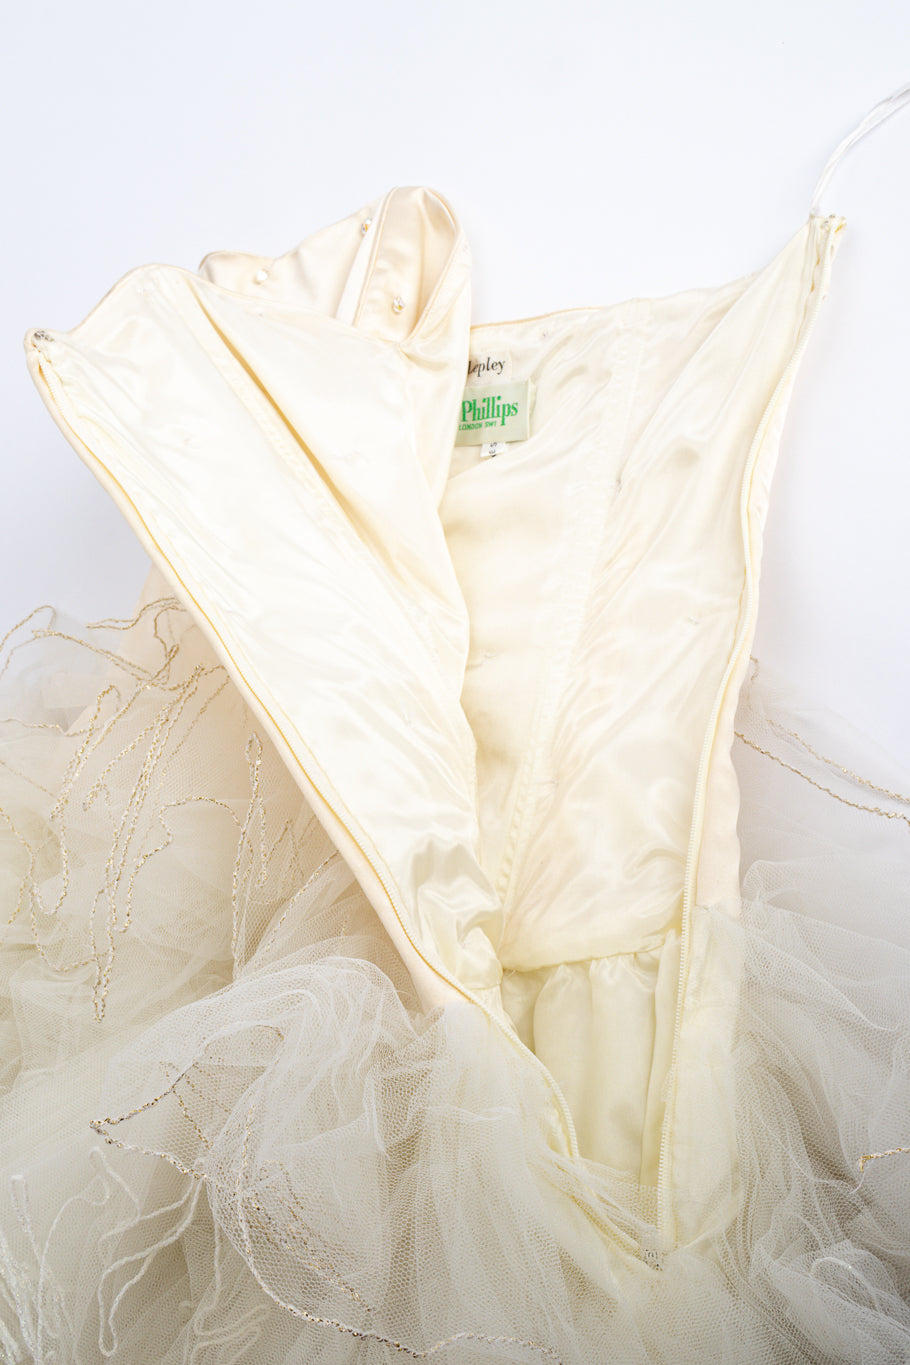 Phillipa Lepley for Lucienne strapless tulle dress side zipper @recessla